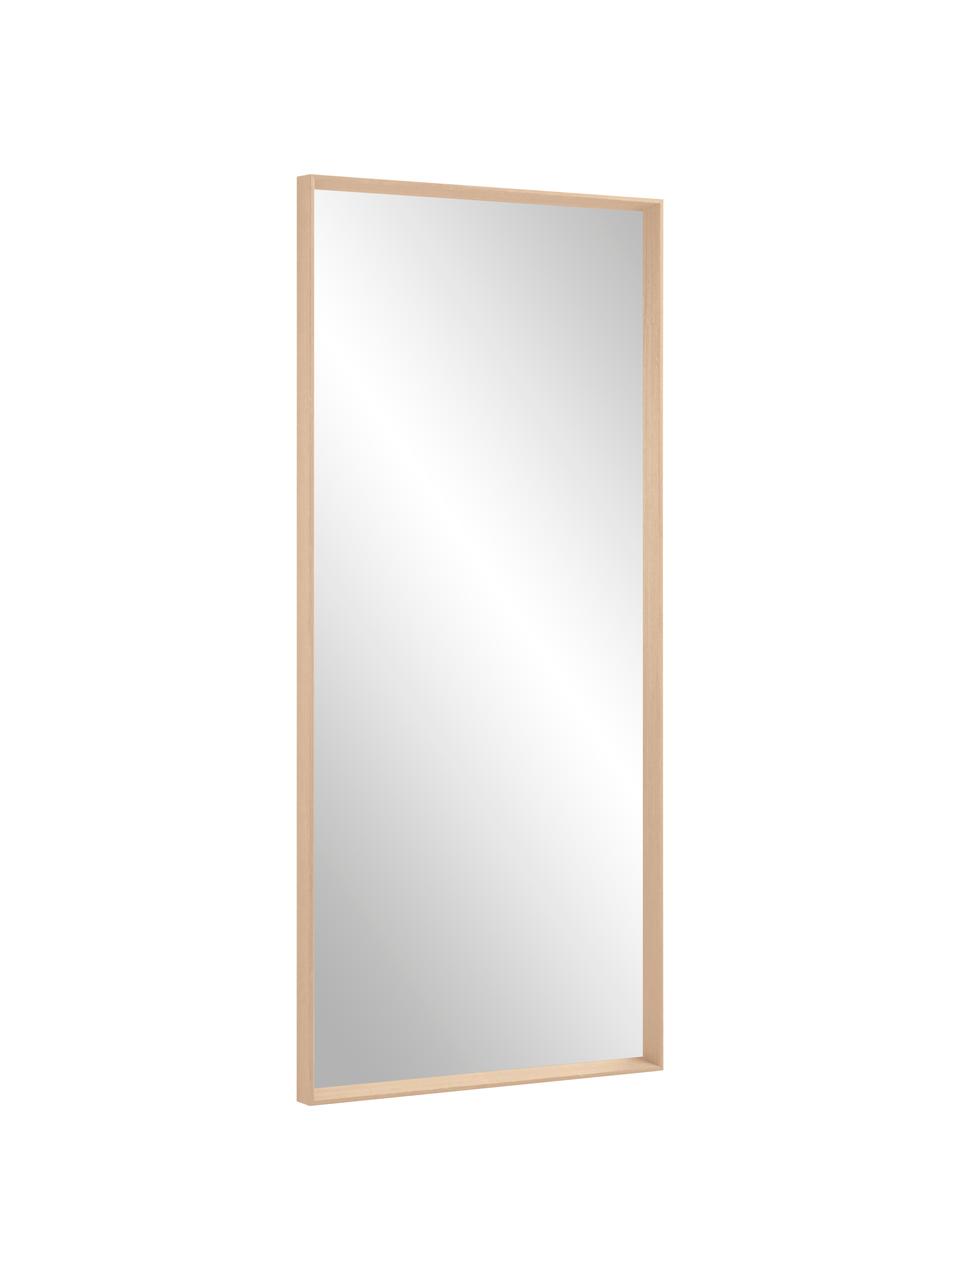 Rechthoekige leunende spiegel Nerina met beige houten lijst, Lijst: hout, Beige, B 80 cm x H 180 cm